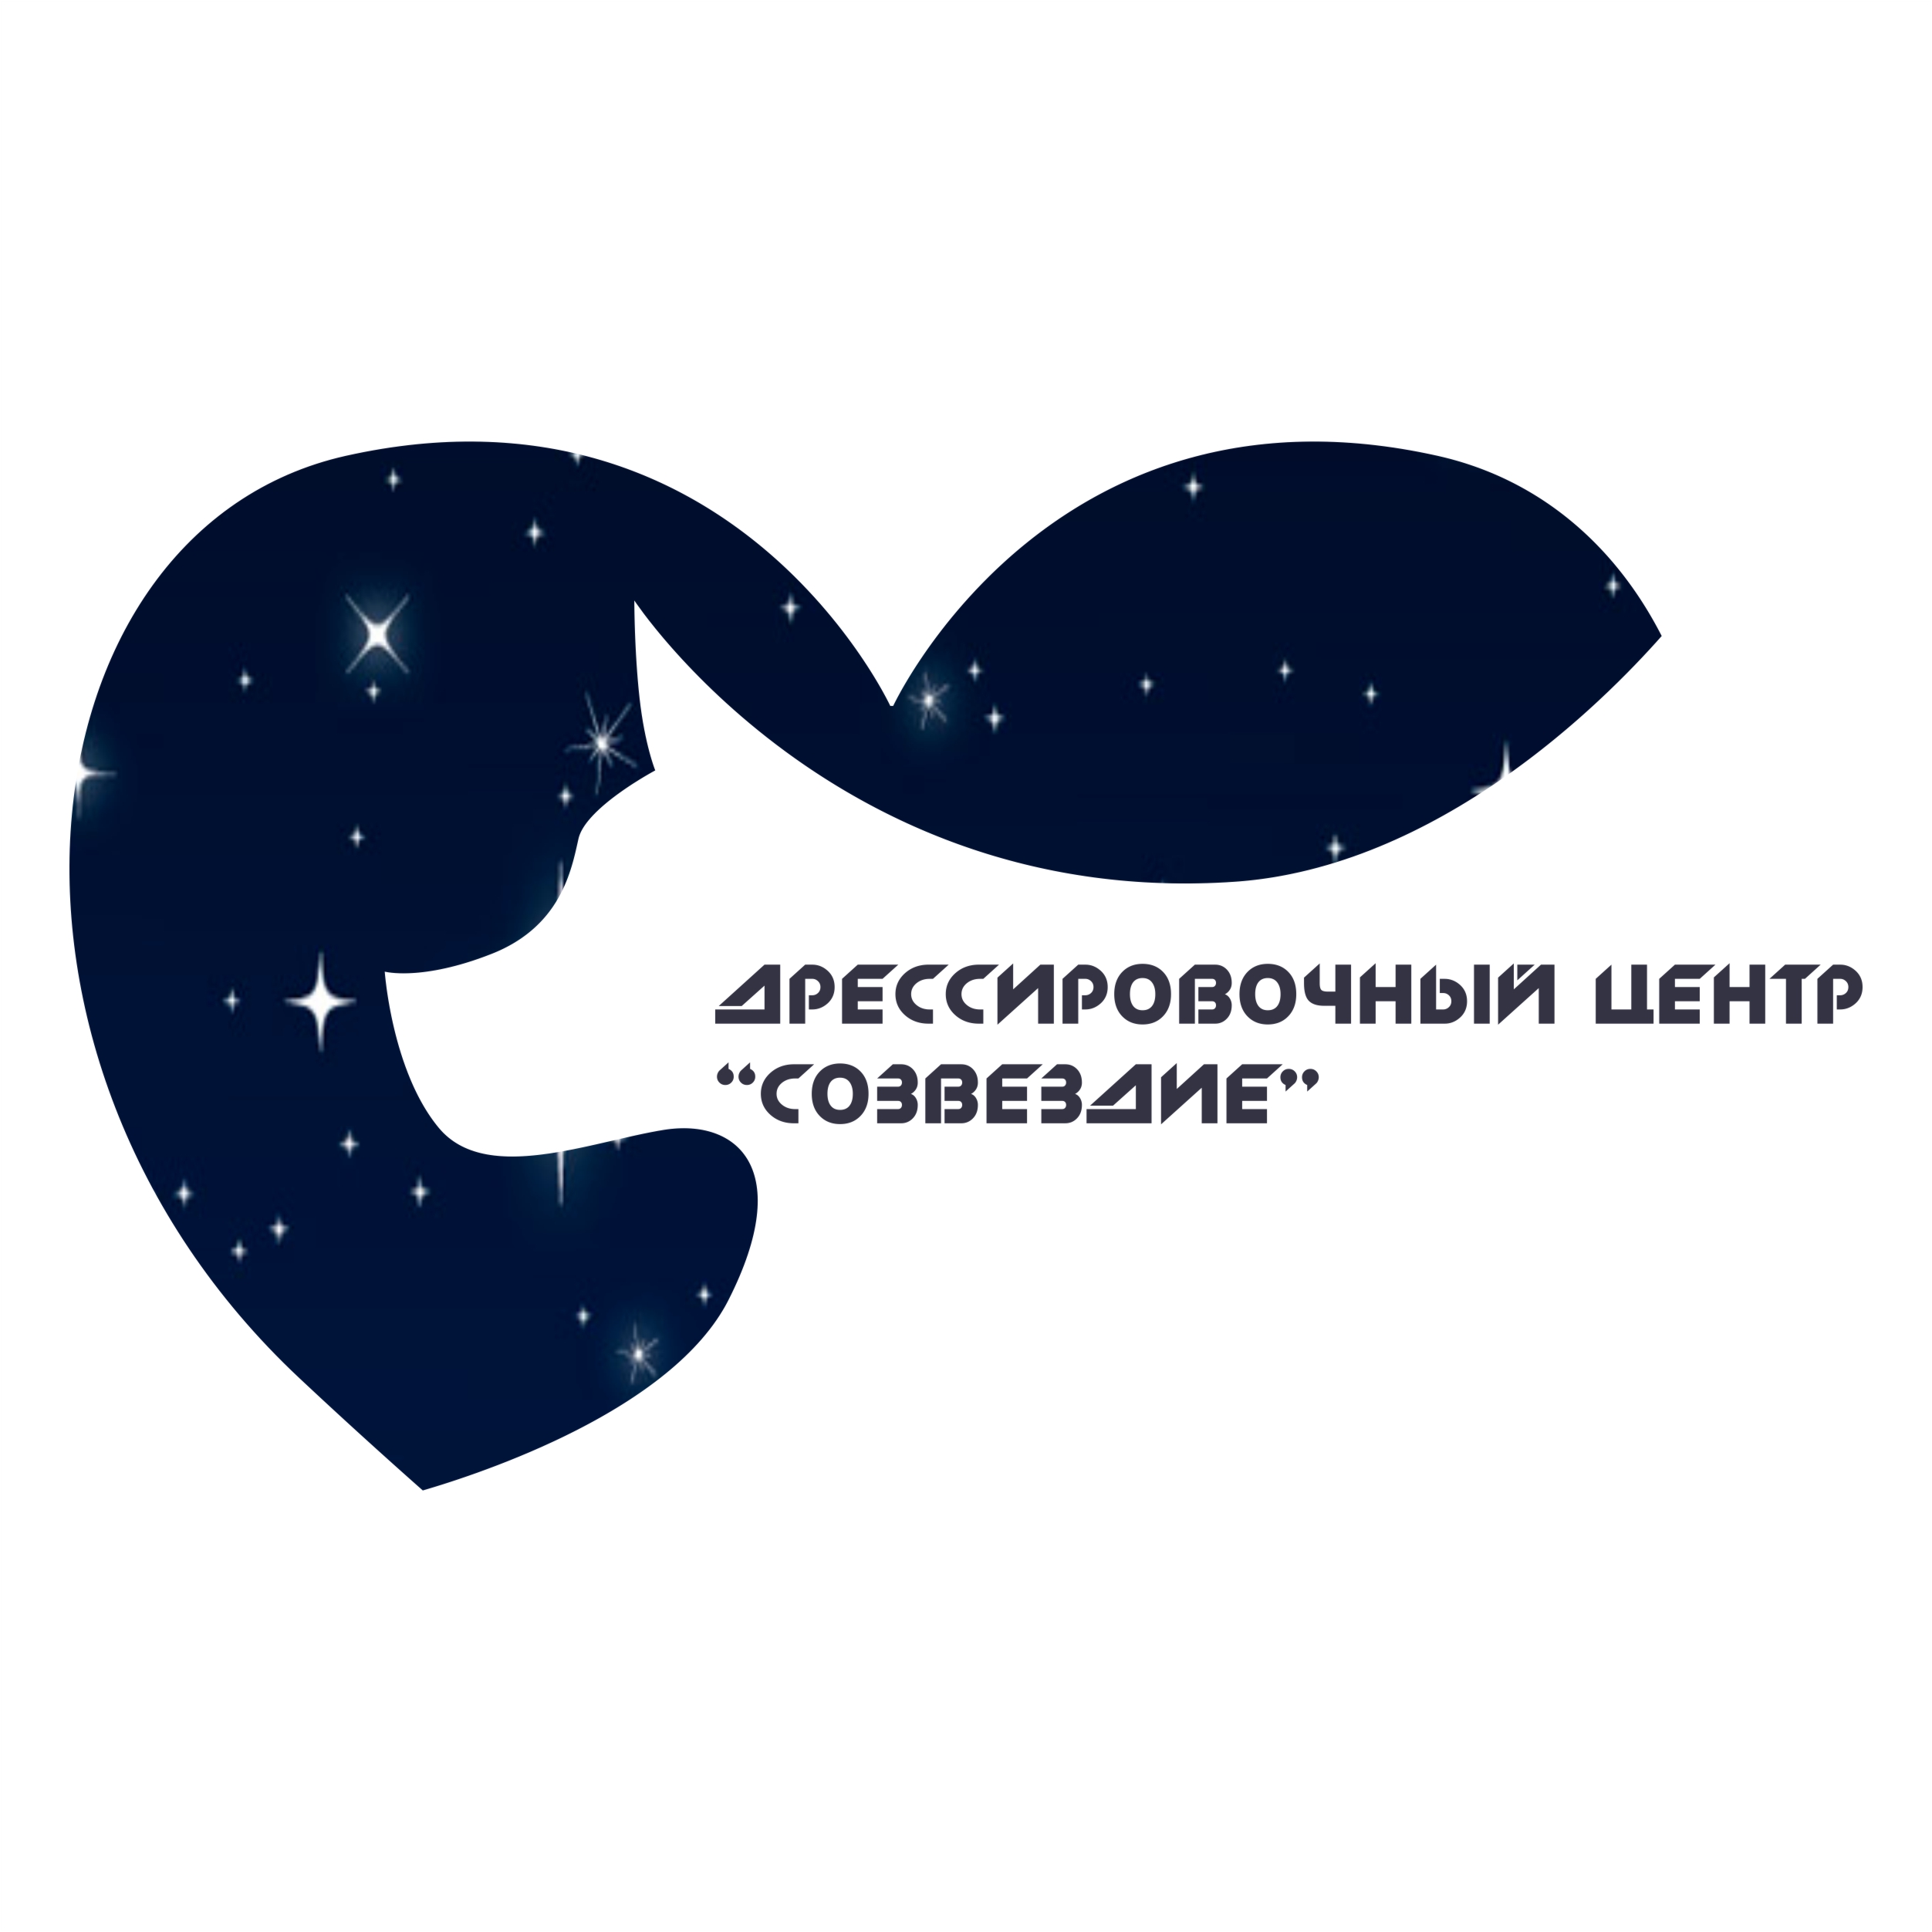 Сайт созвездия екатеринбурга